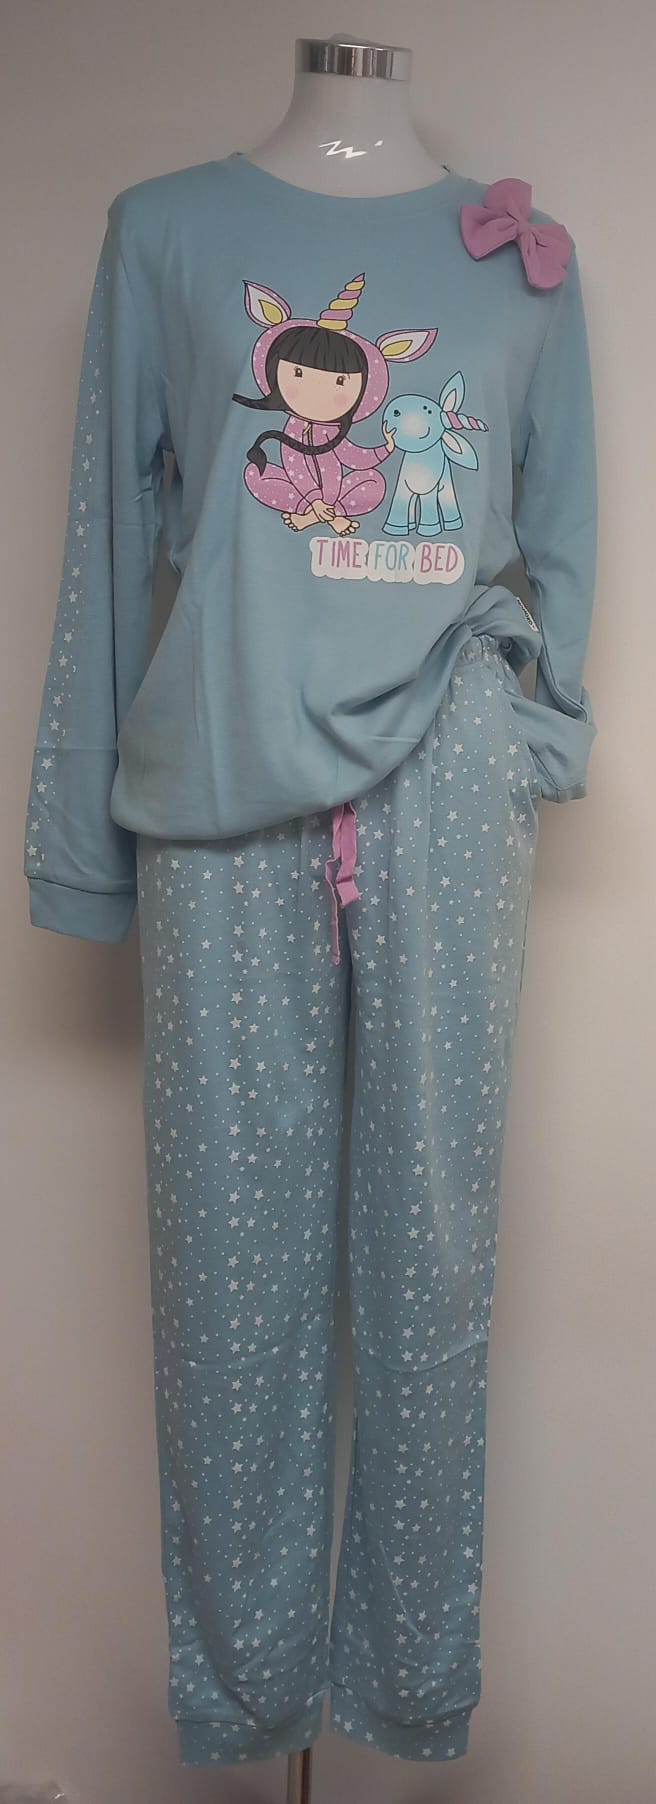 Pijama cielo sugerente con lazo